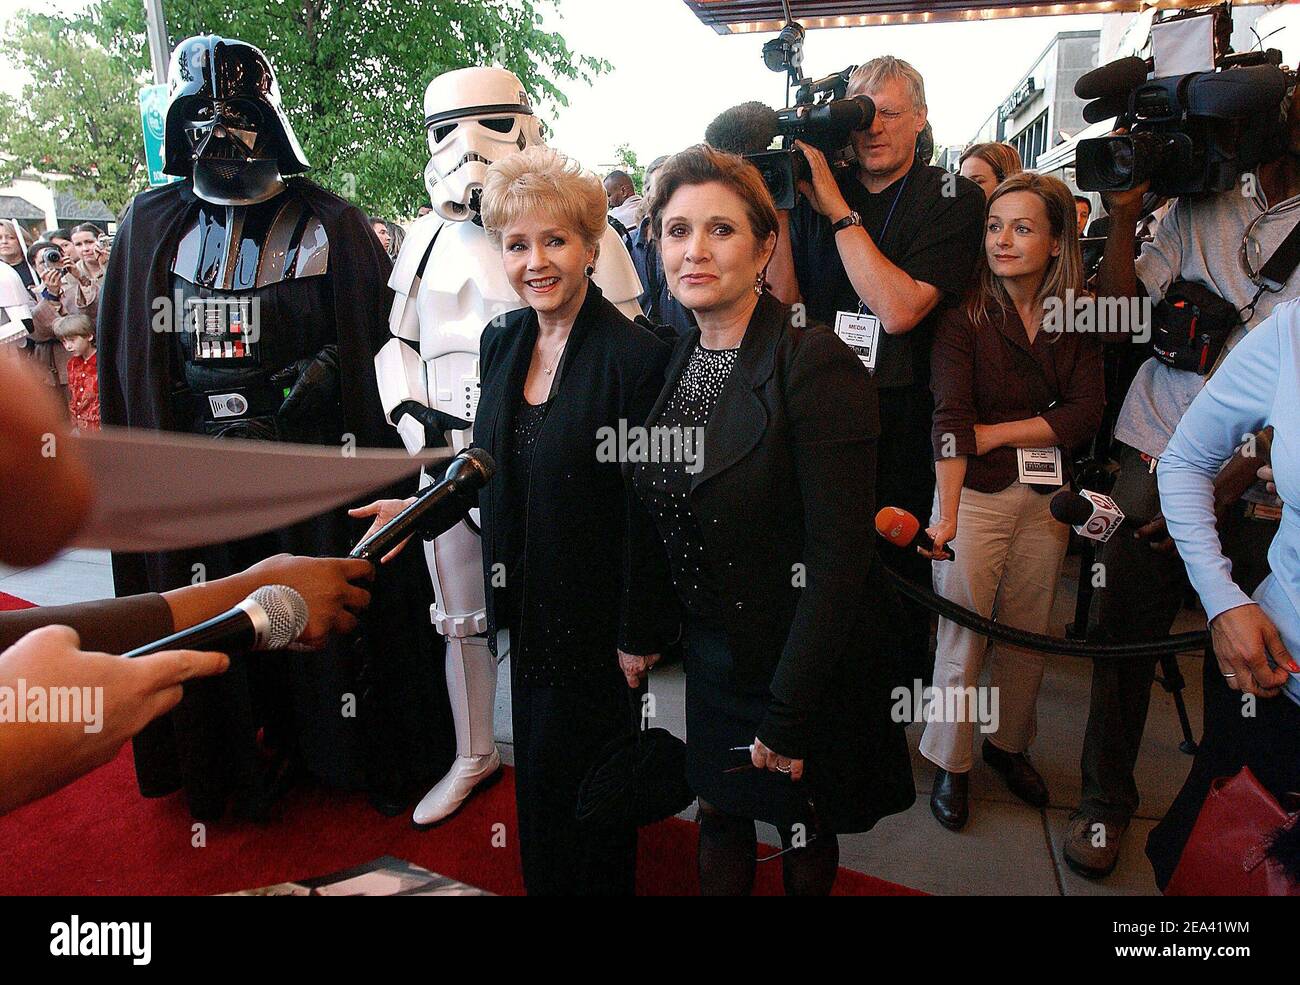 Schauspielerin Carrie Fisher, die Prinzessin Leia im Original Star Wars-Film spielte, nimmt an der Premiere von 'Star Wars Episode III, die Rache der Sith' in Washington DC, USA, am 12. Mai 2005 Teil. Foto von Olivier Douliery/ABACA. Stockfoto